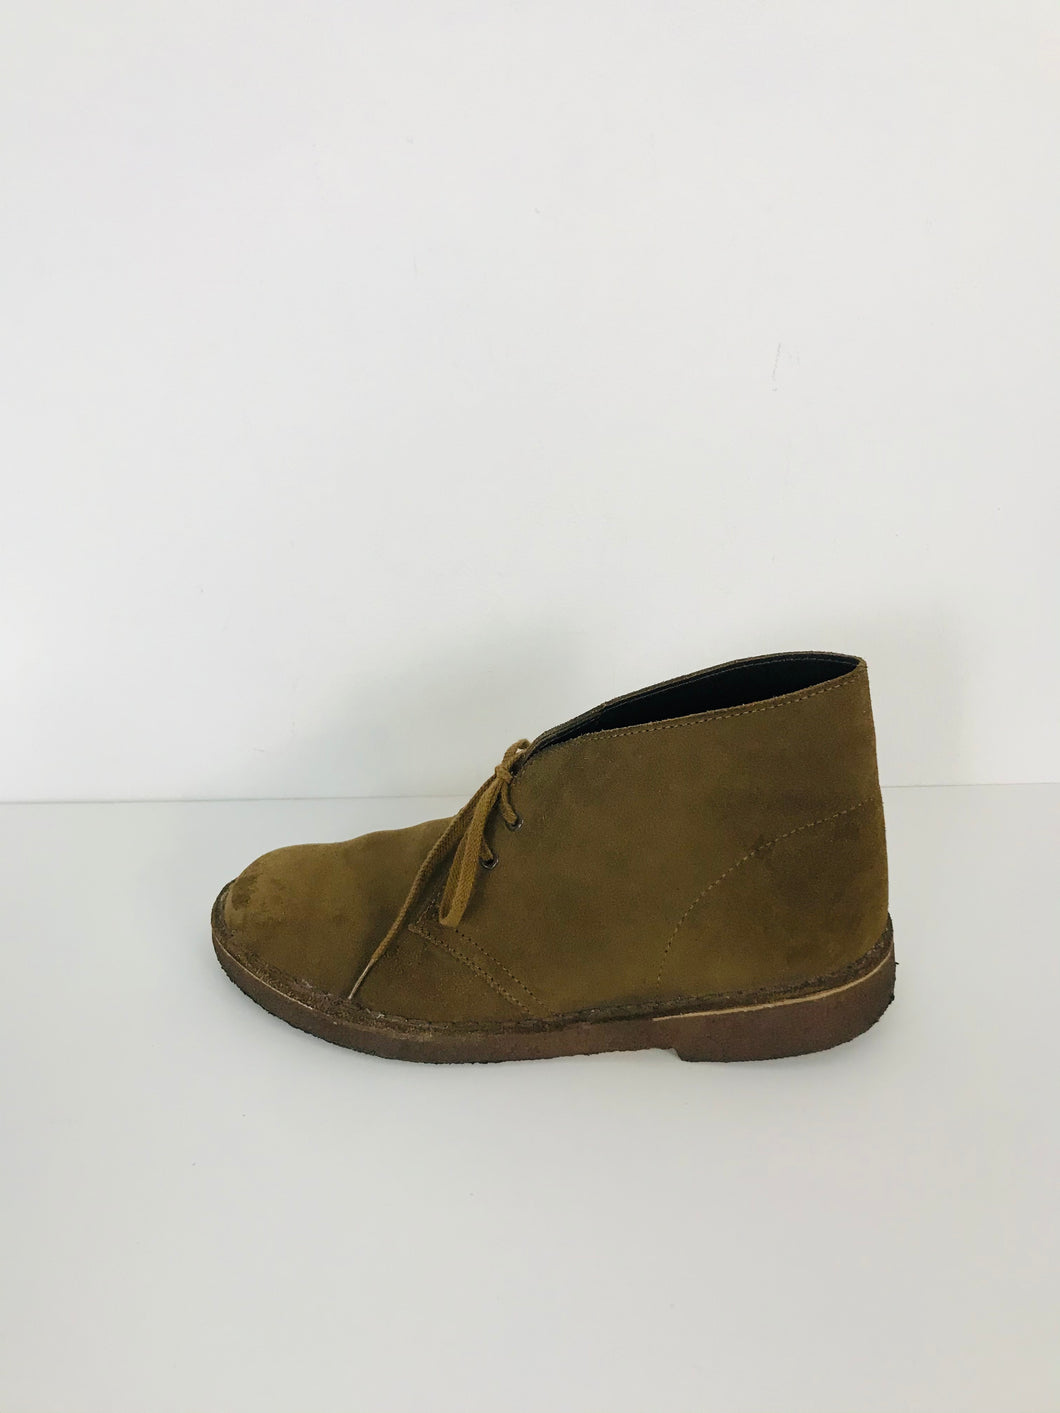 Clarks Originals Women's Suede Ankle Desert Boots | UK6.5 | Brown